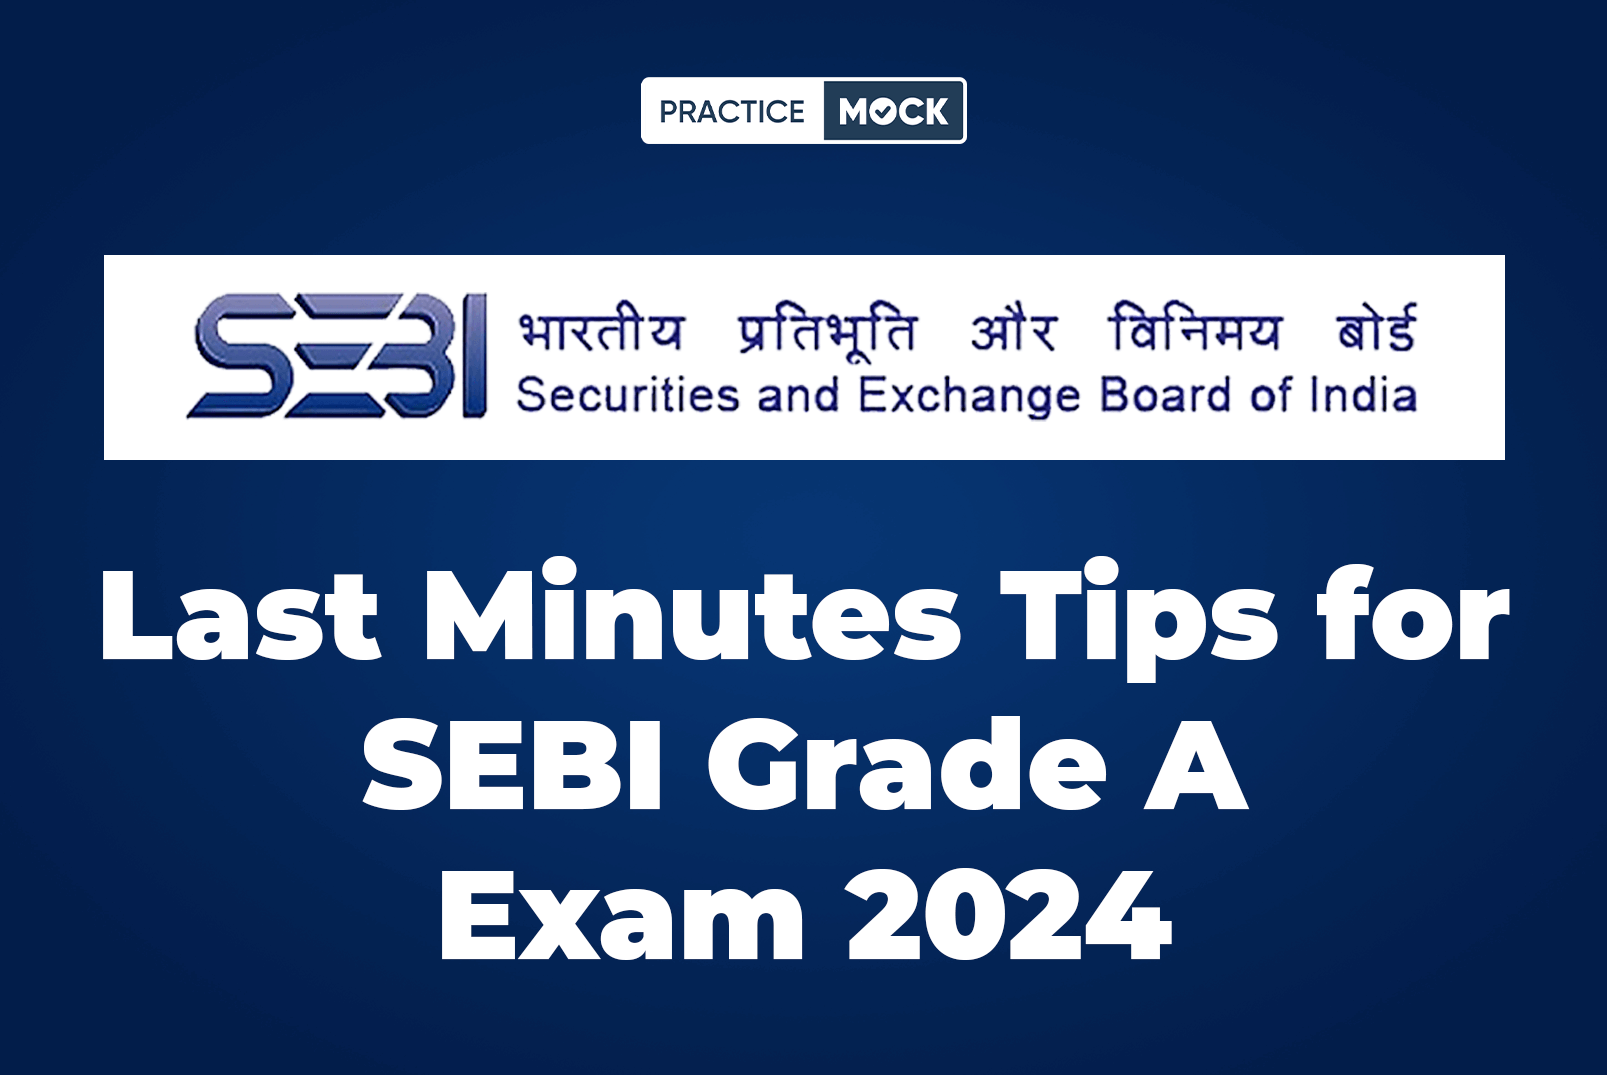 Last Minutes Tips For SEBI Grade A Exam 2024